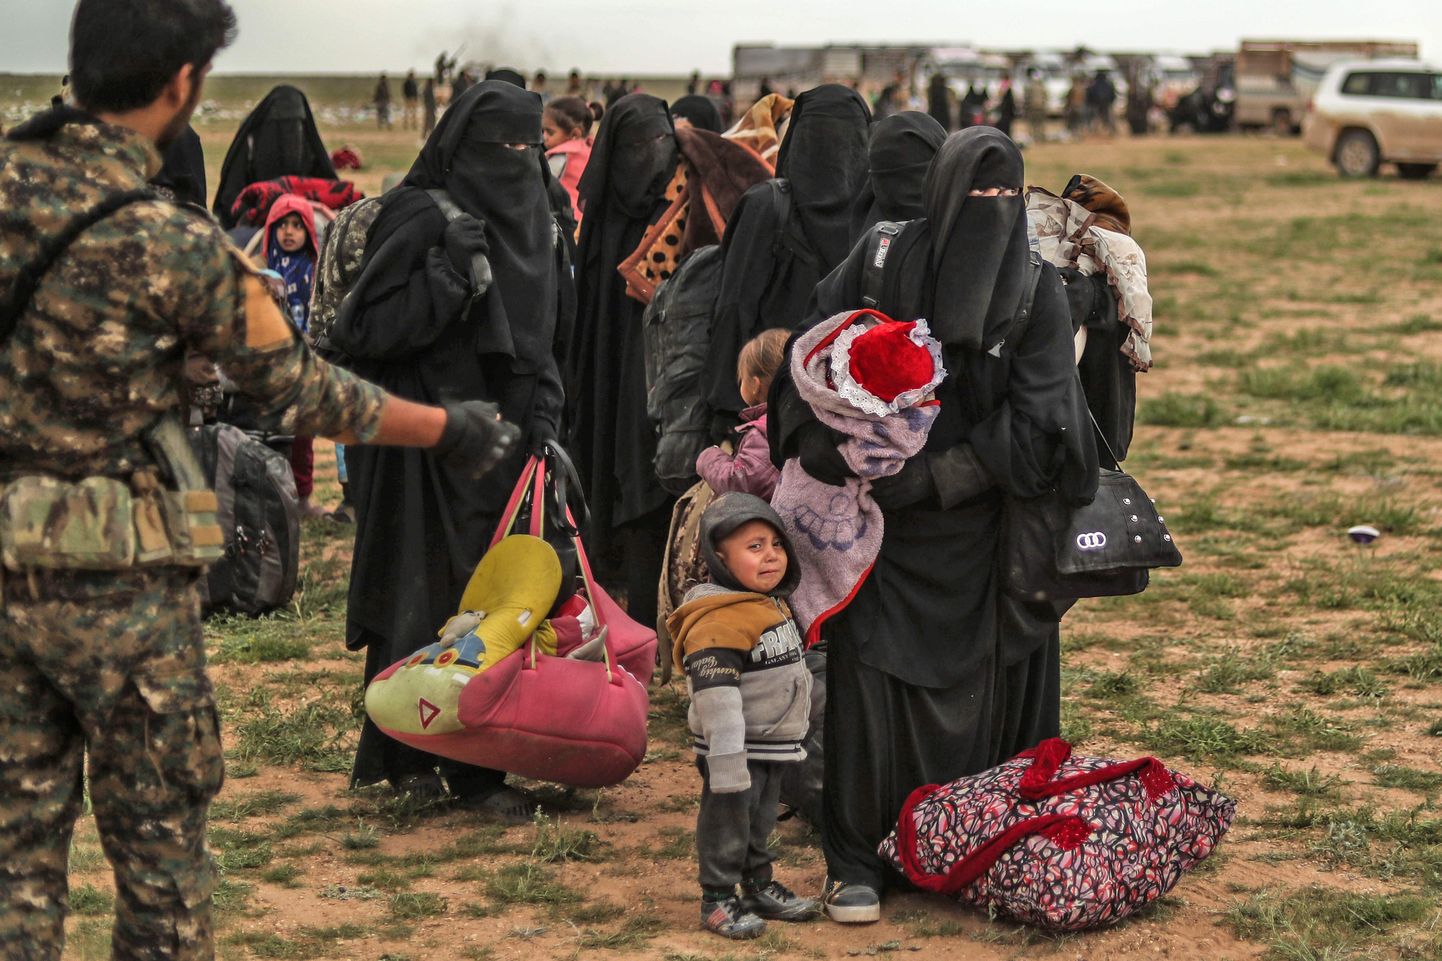 ISISe viimasest kantsist Baghouzist evakueeritutud naised ja lapsed ootavad Süüria Demokraatlike Jõudude (SDJ) kontrollpunktis. SDJi võitlejate sõnul on kõik relvad peidetud naiste riietesse ja kottidesse, meeste käest ei leia nad midagi.